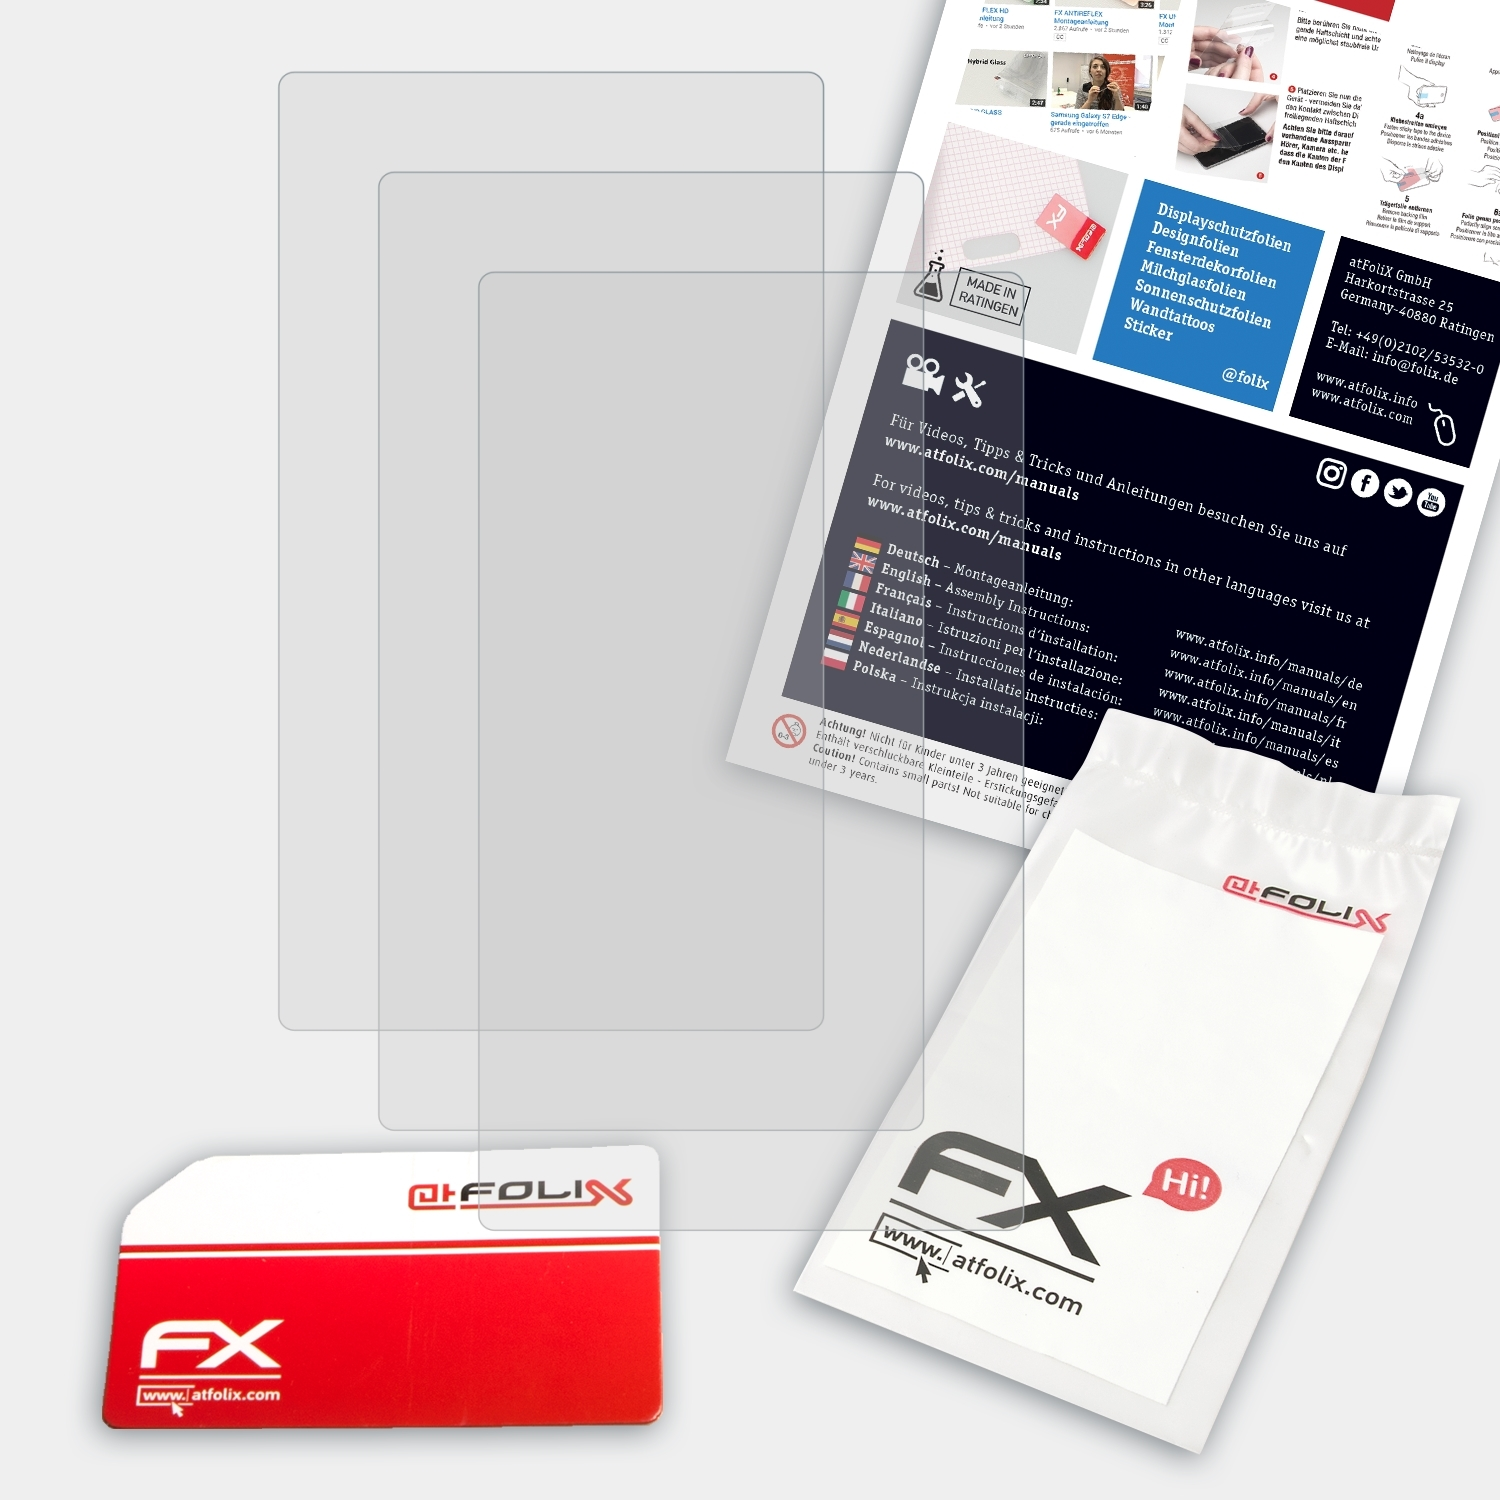 ATFOLIX 3x FX-Antireflex Displayschutz(für Garmin Montana 610/680t)